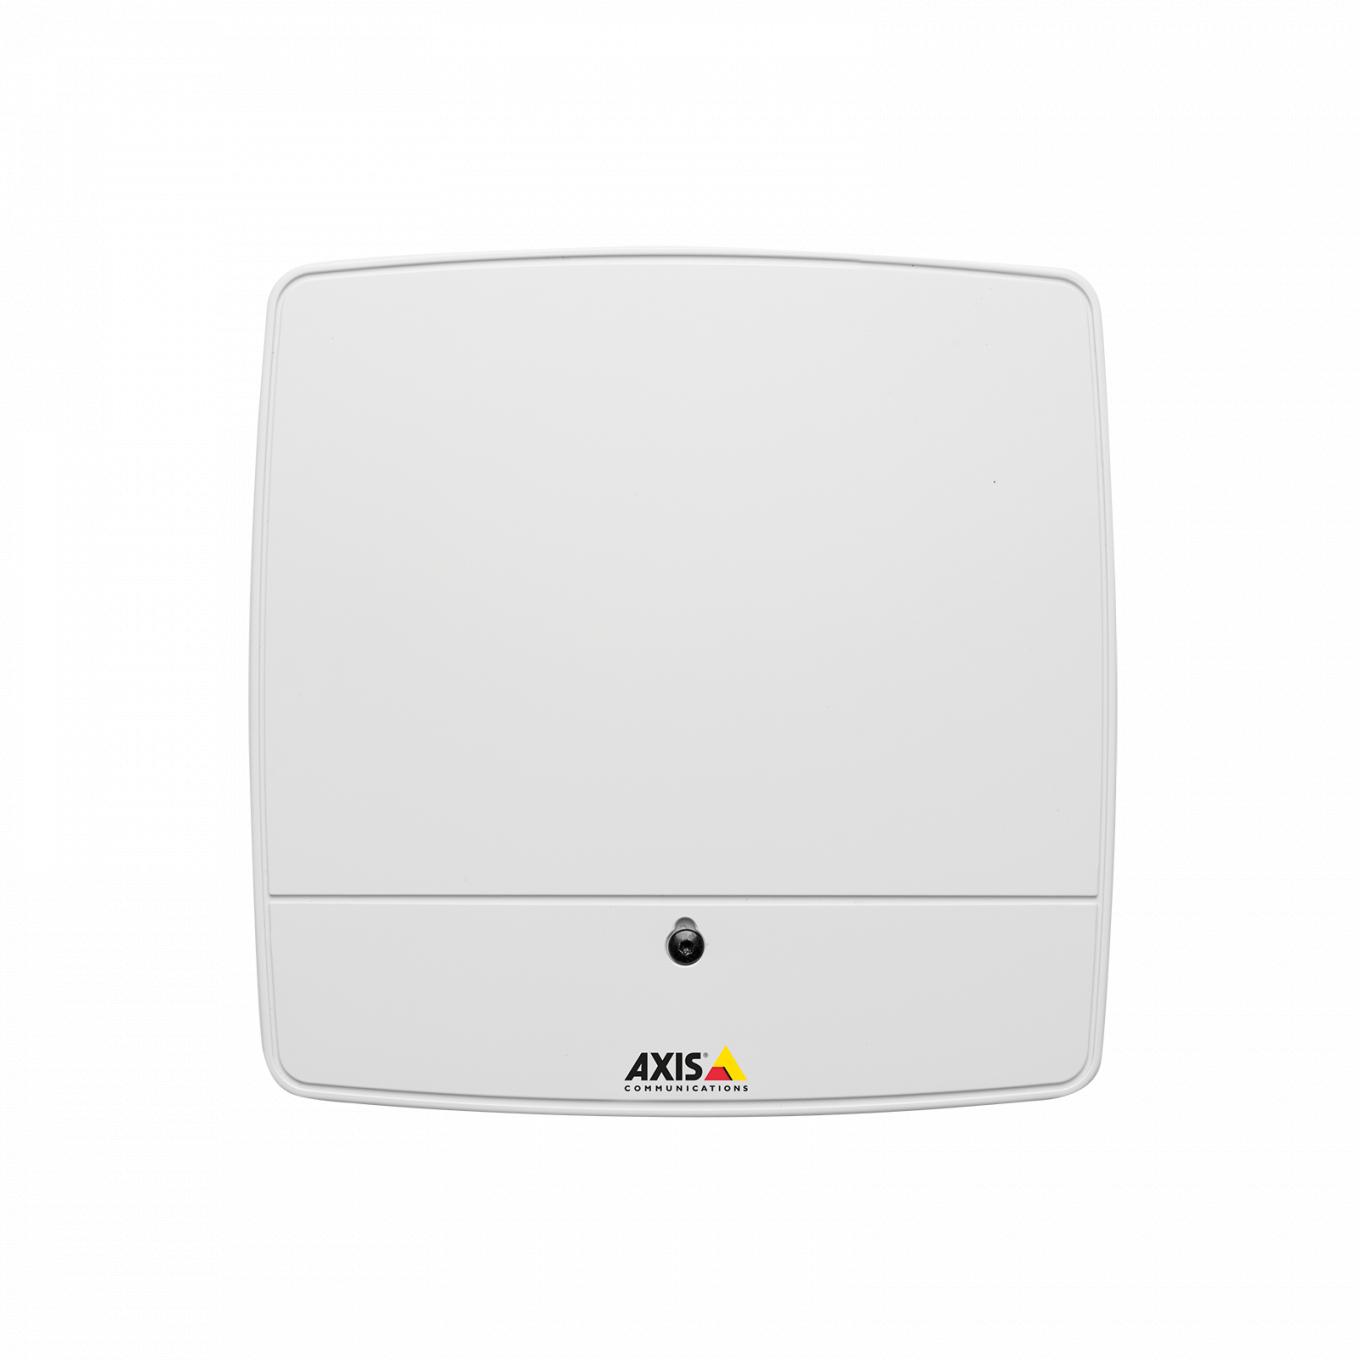 AXIS A1001 Network Door Controller, visto desde el frente